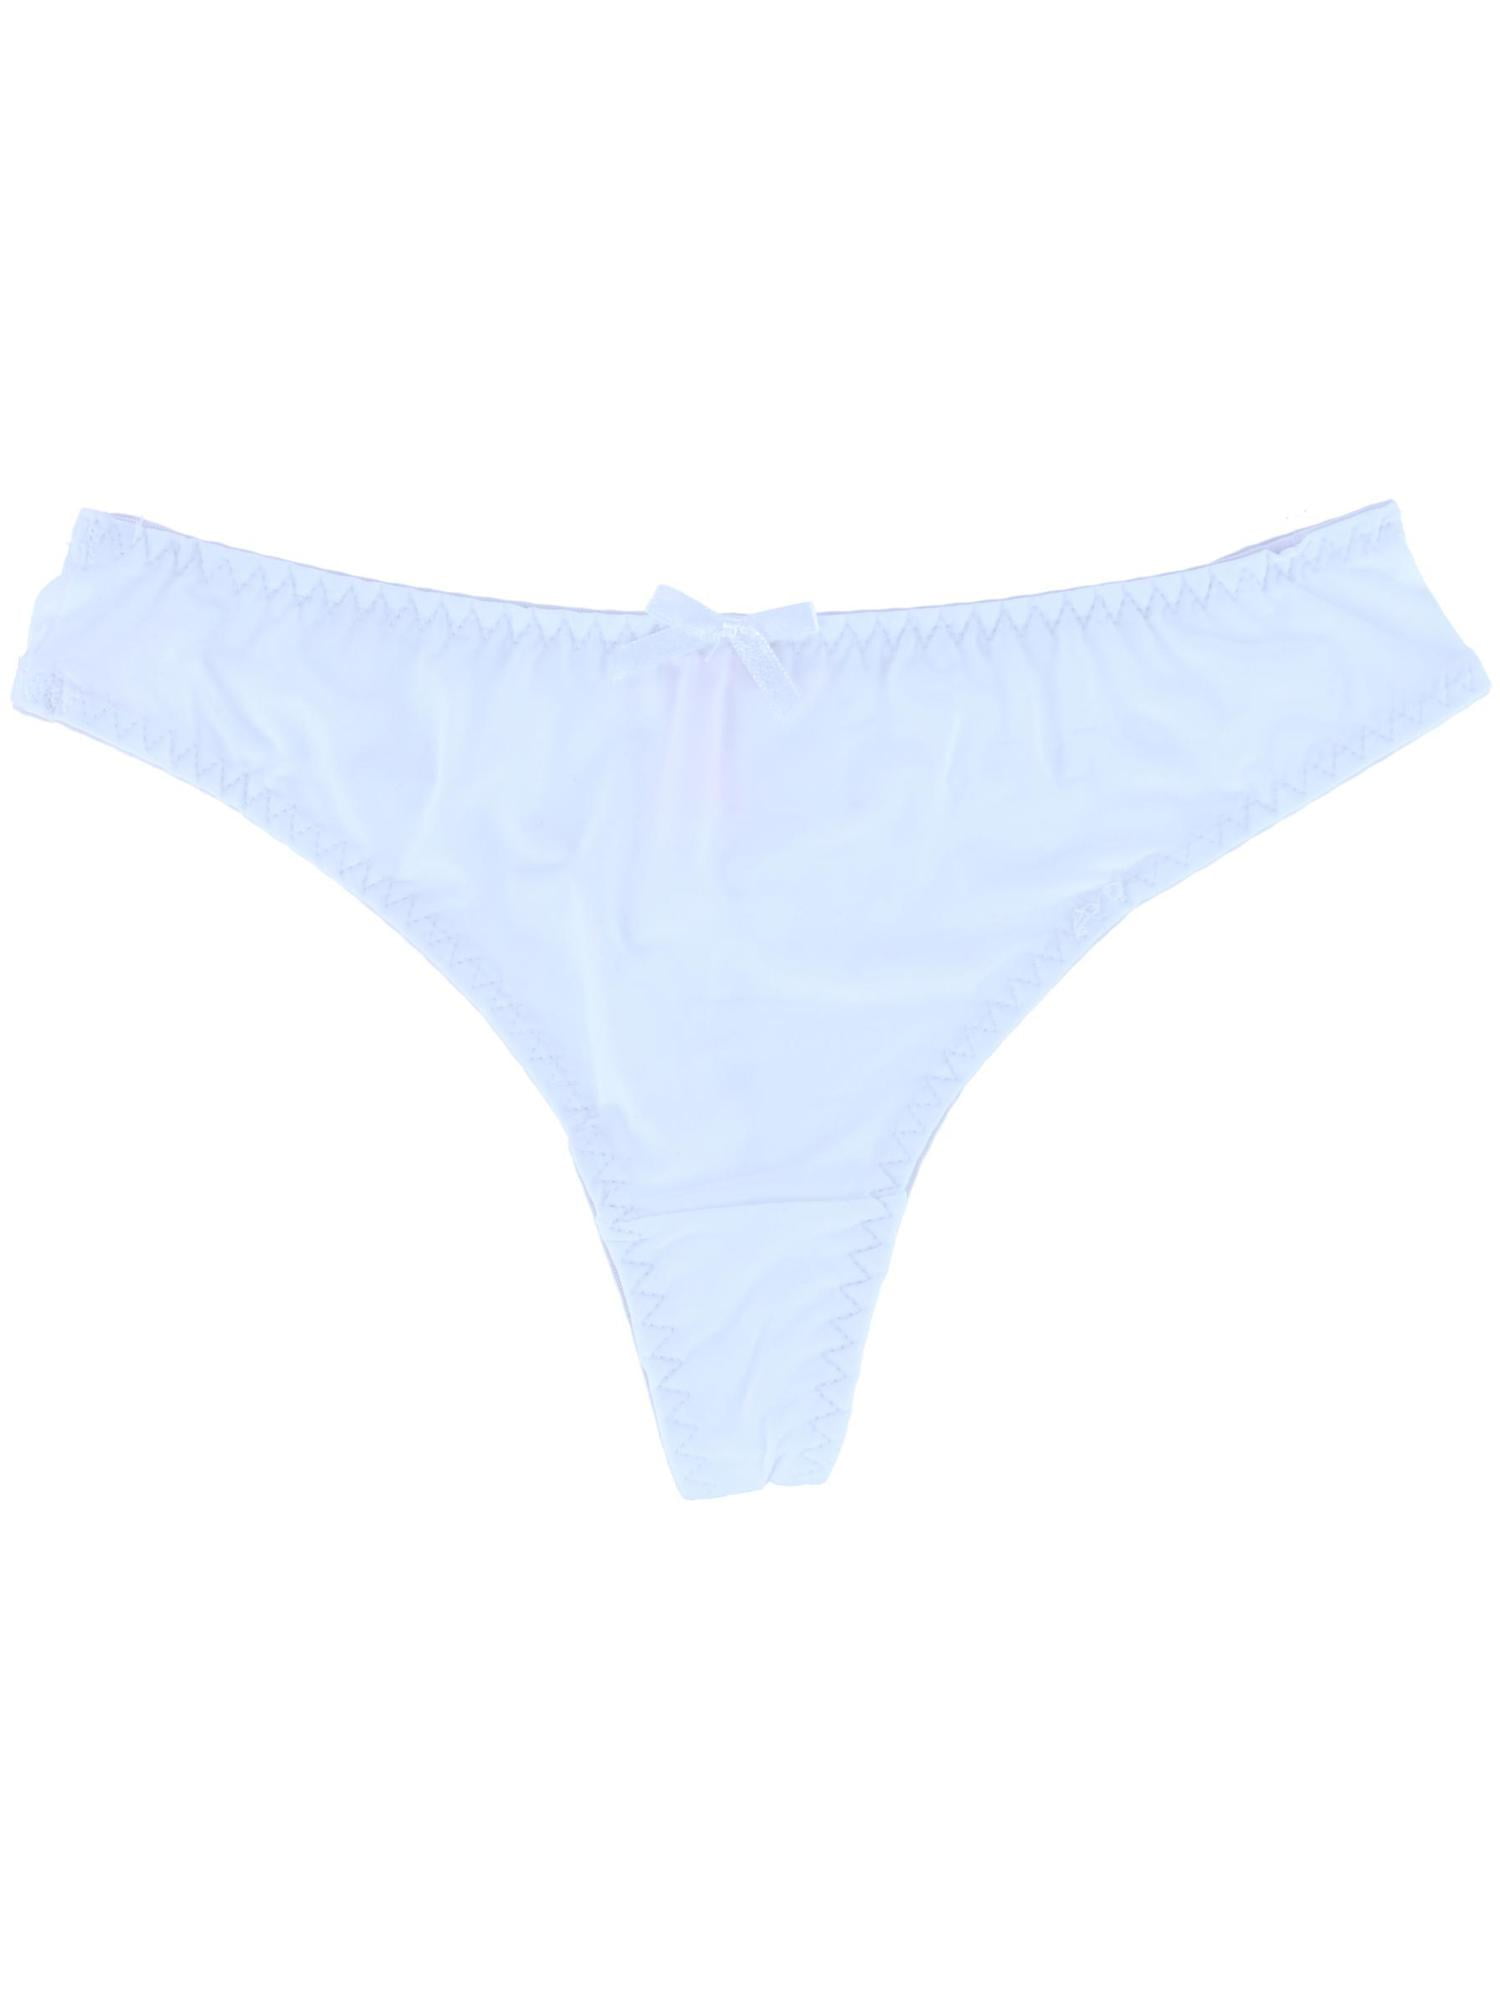 CTM Women's Lace Cheeky Underwear